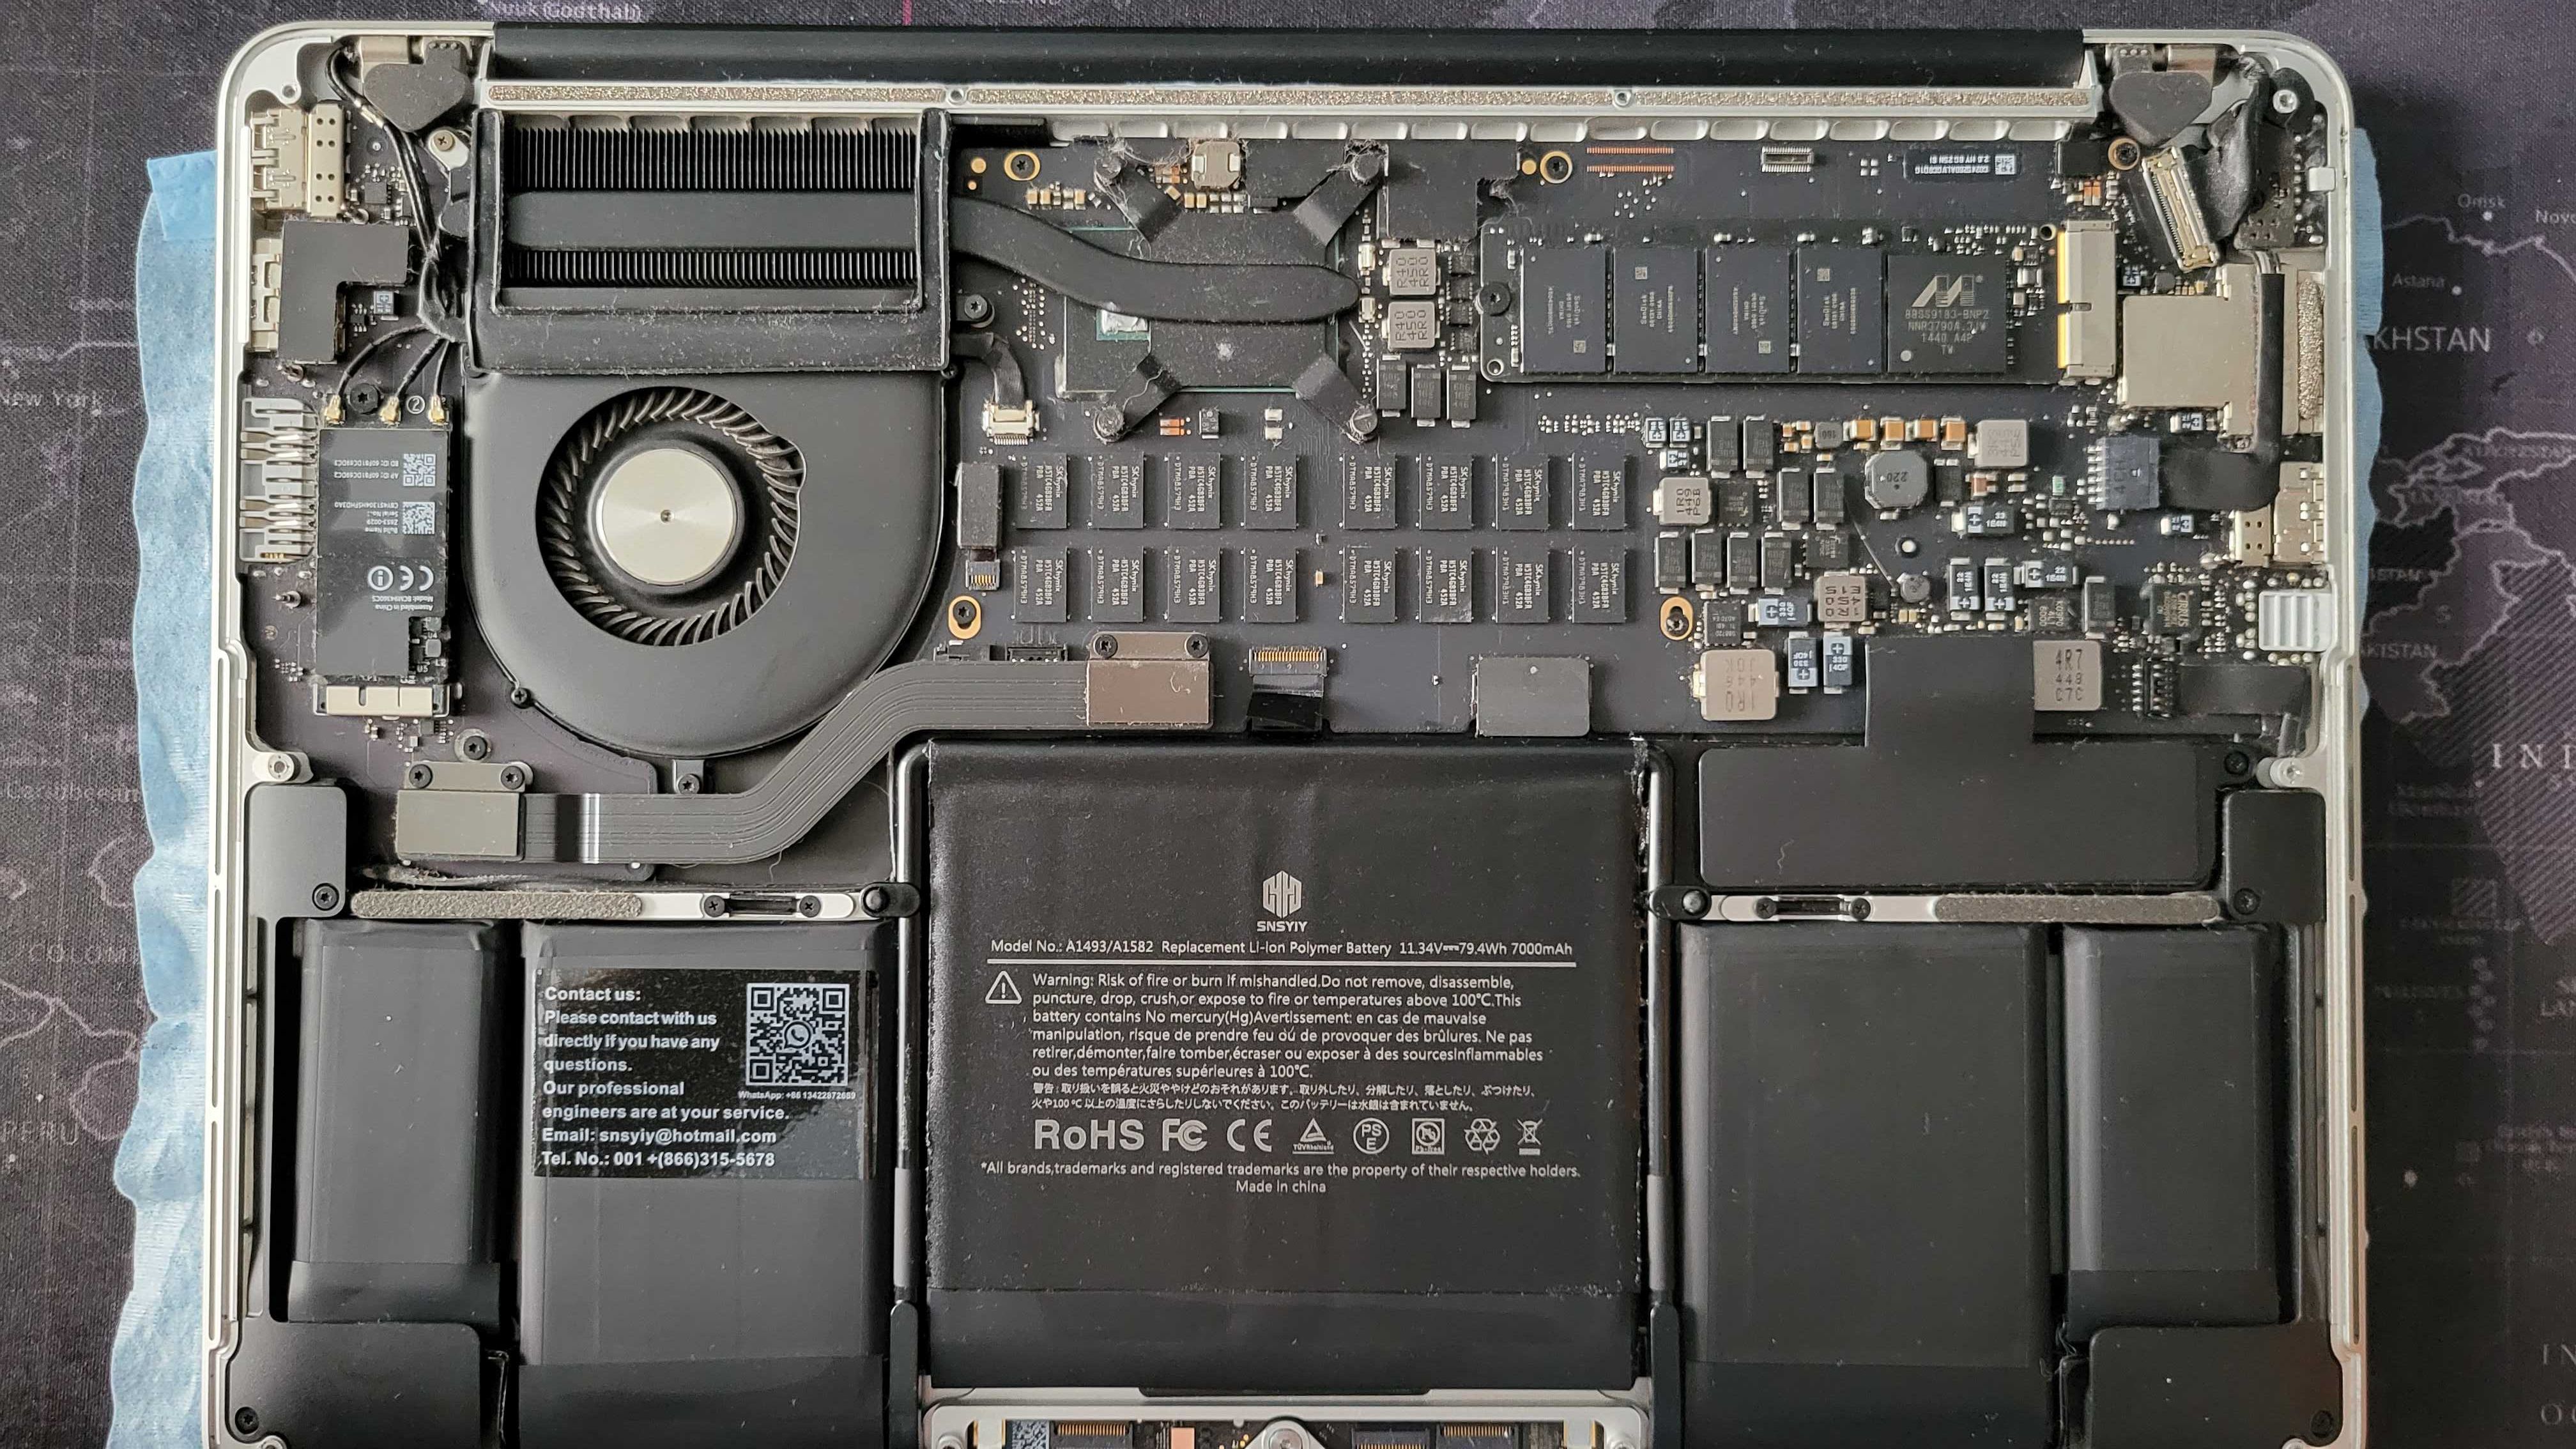 MacBook Pro, Mid 2014, Intel core i5, 8 GB RAM, 128 GB SSD